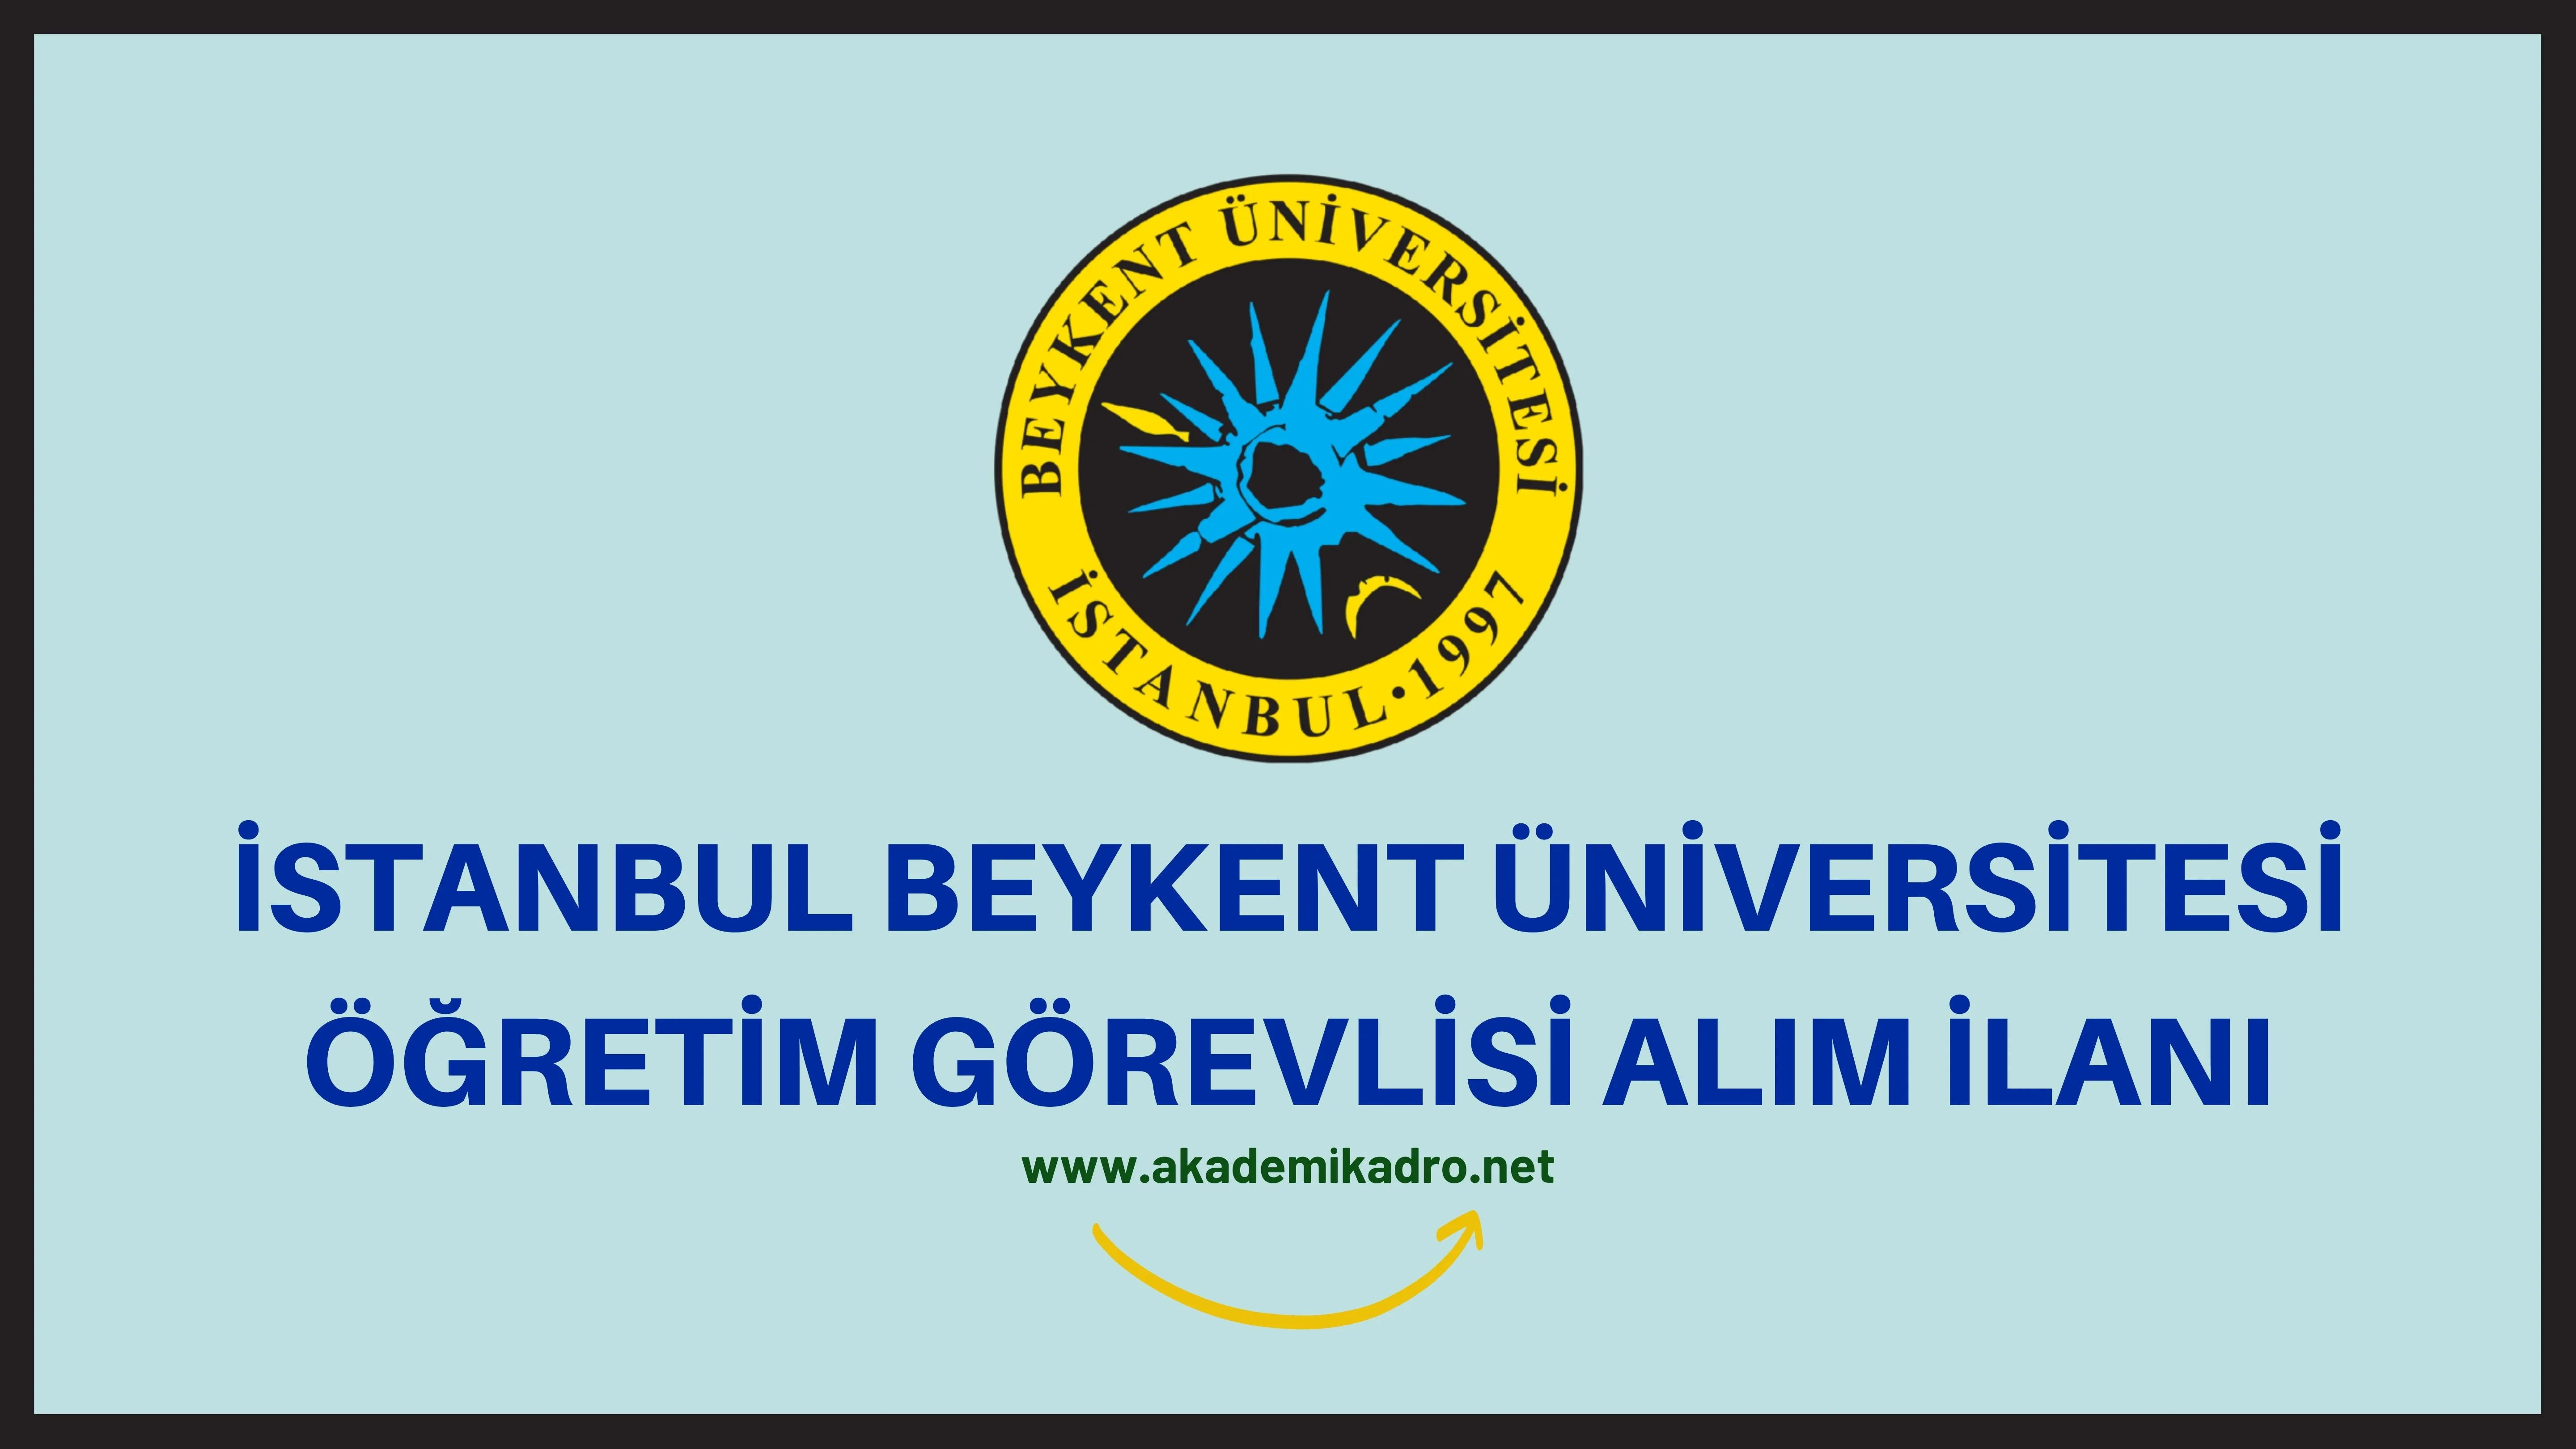 Beykent Üniversitesi 23 Öğretim üyesi, 3 Öğretim Görevlisi ve 3 Araştırma görevlisi alacaktır. Son başvuru tarihi 28 Eylül 2022